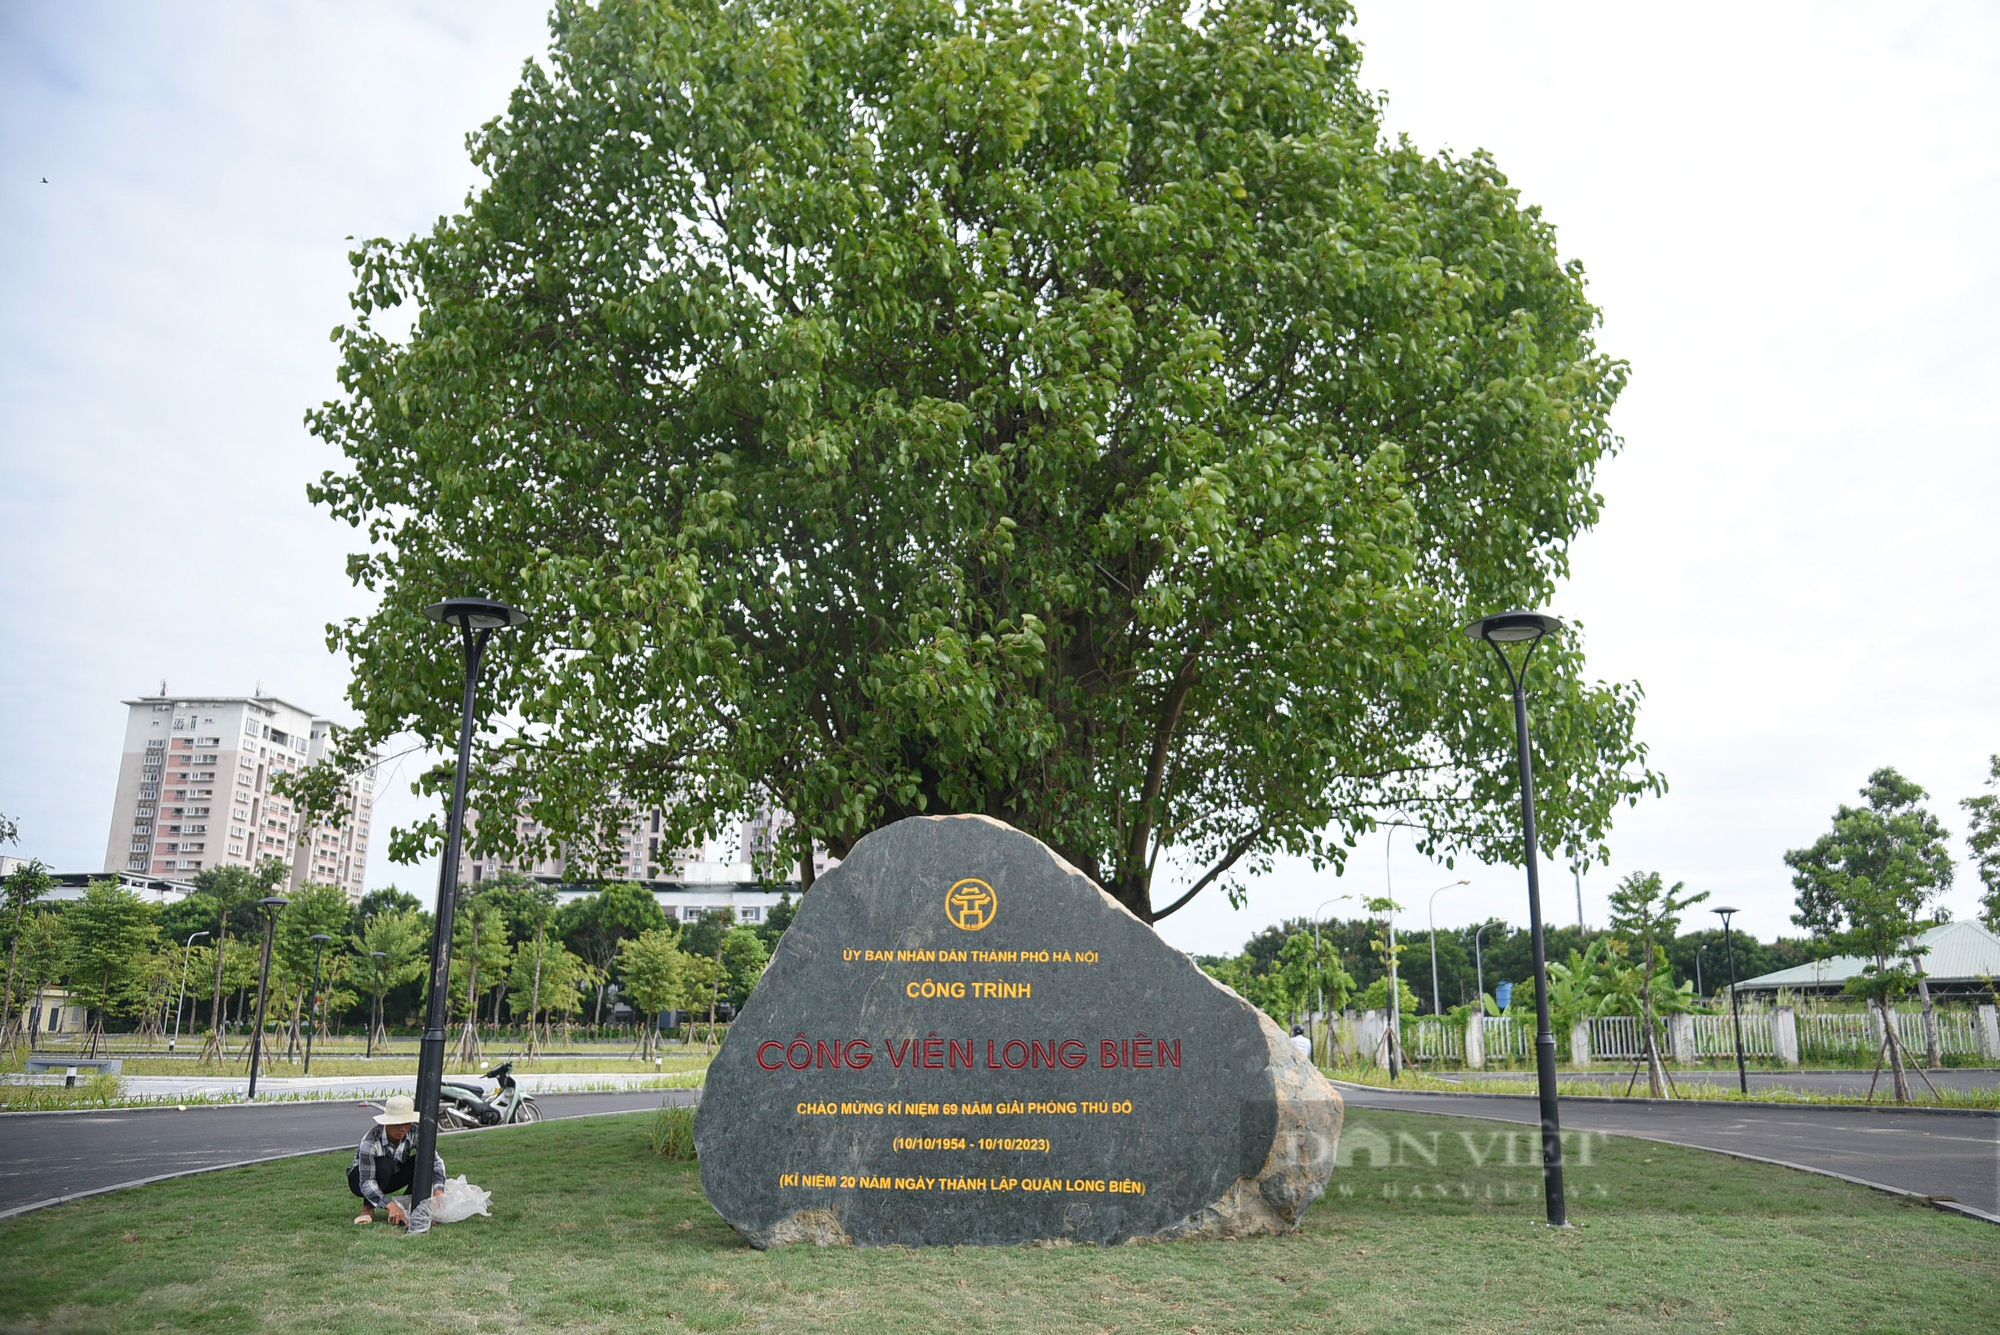 Mãn nhãn với công viên gần 100 tỷ rộng nhất quận Long Biên  - Ảnh 3.